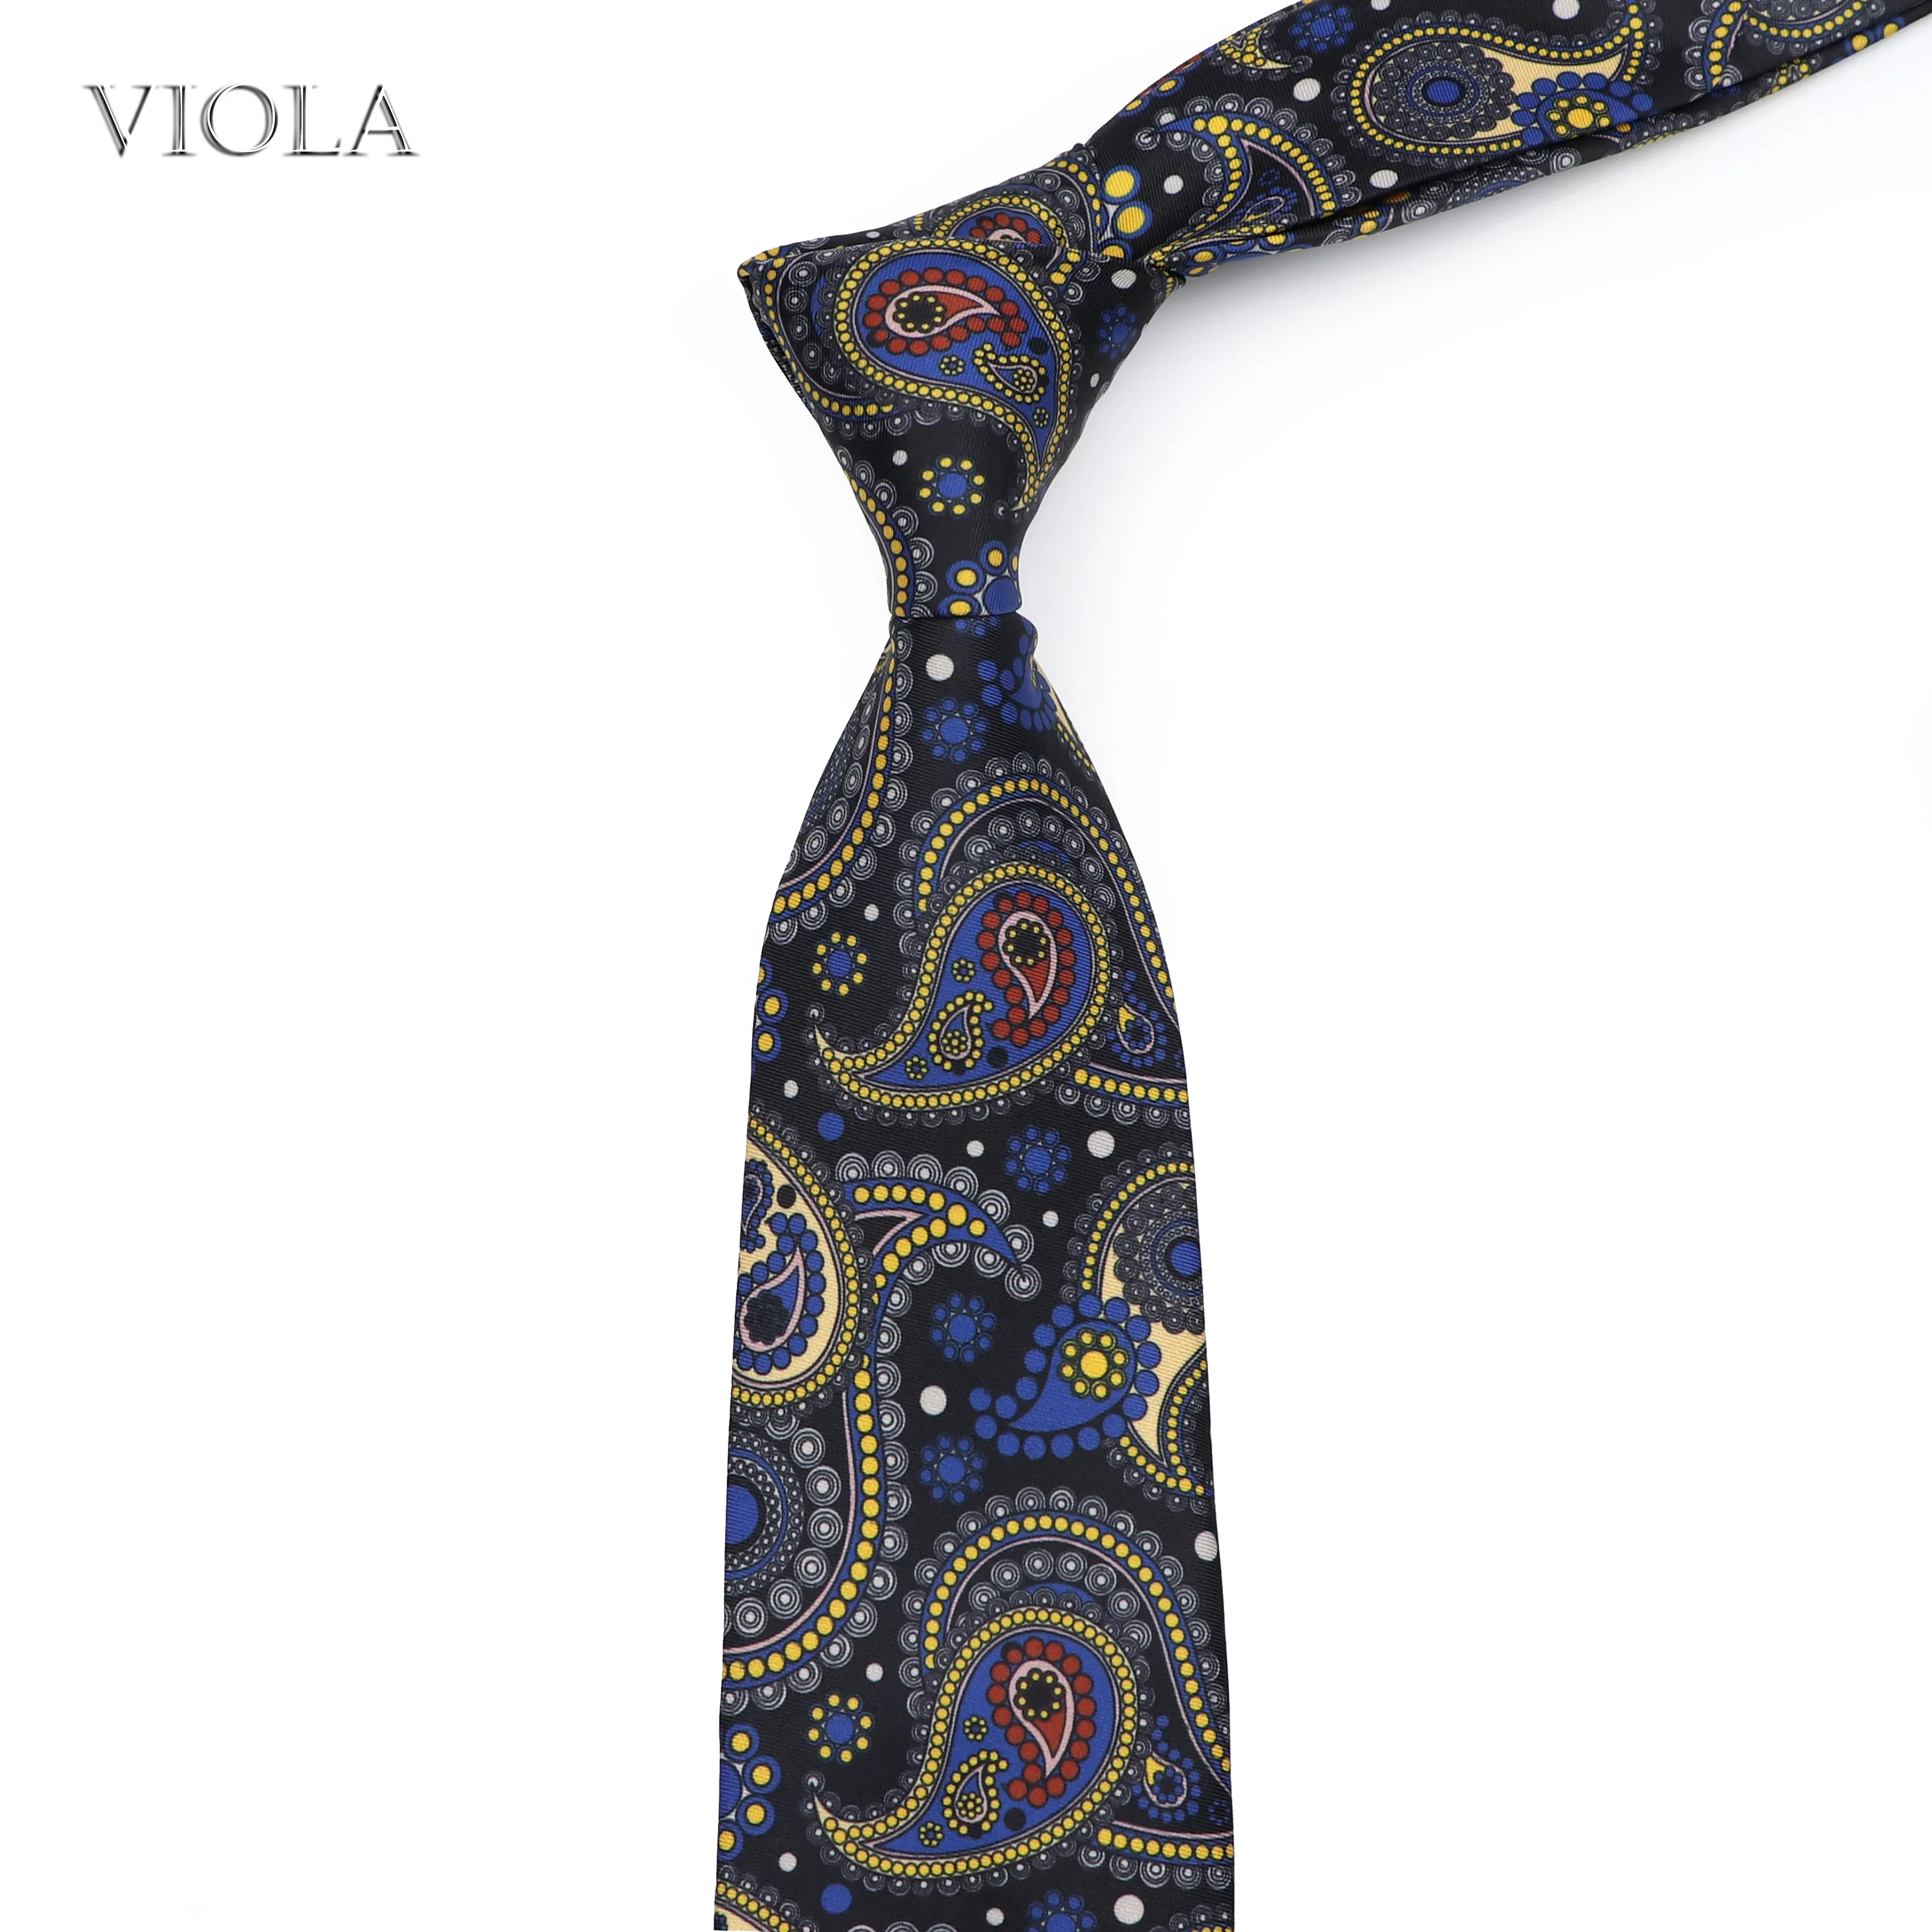 Silk Touch Vintage Polyester Tie Print 7cm Luxury Floral Necktie Plaid Dot Paisley Cravat Banquet Suit Tuxedo Gift For Men Daily |